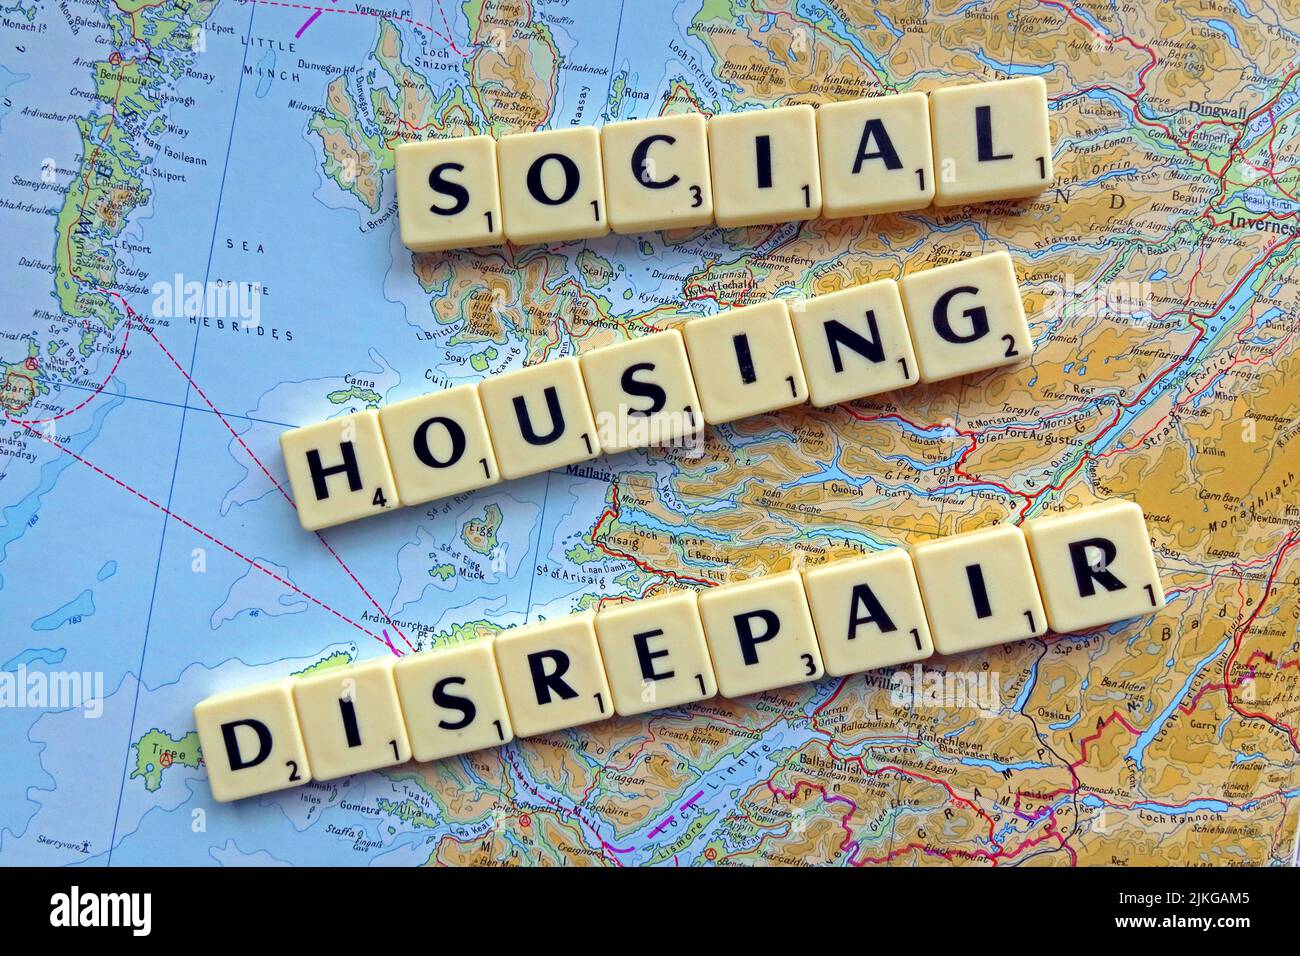 Scotland SocialHousing / Council Housing les problèmes de réparation avec des réparations réactives orthographiées dans les lettres Scrabble sur une carte Banque D'Images